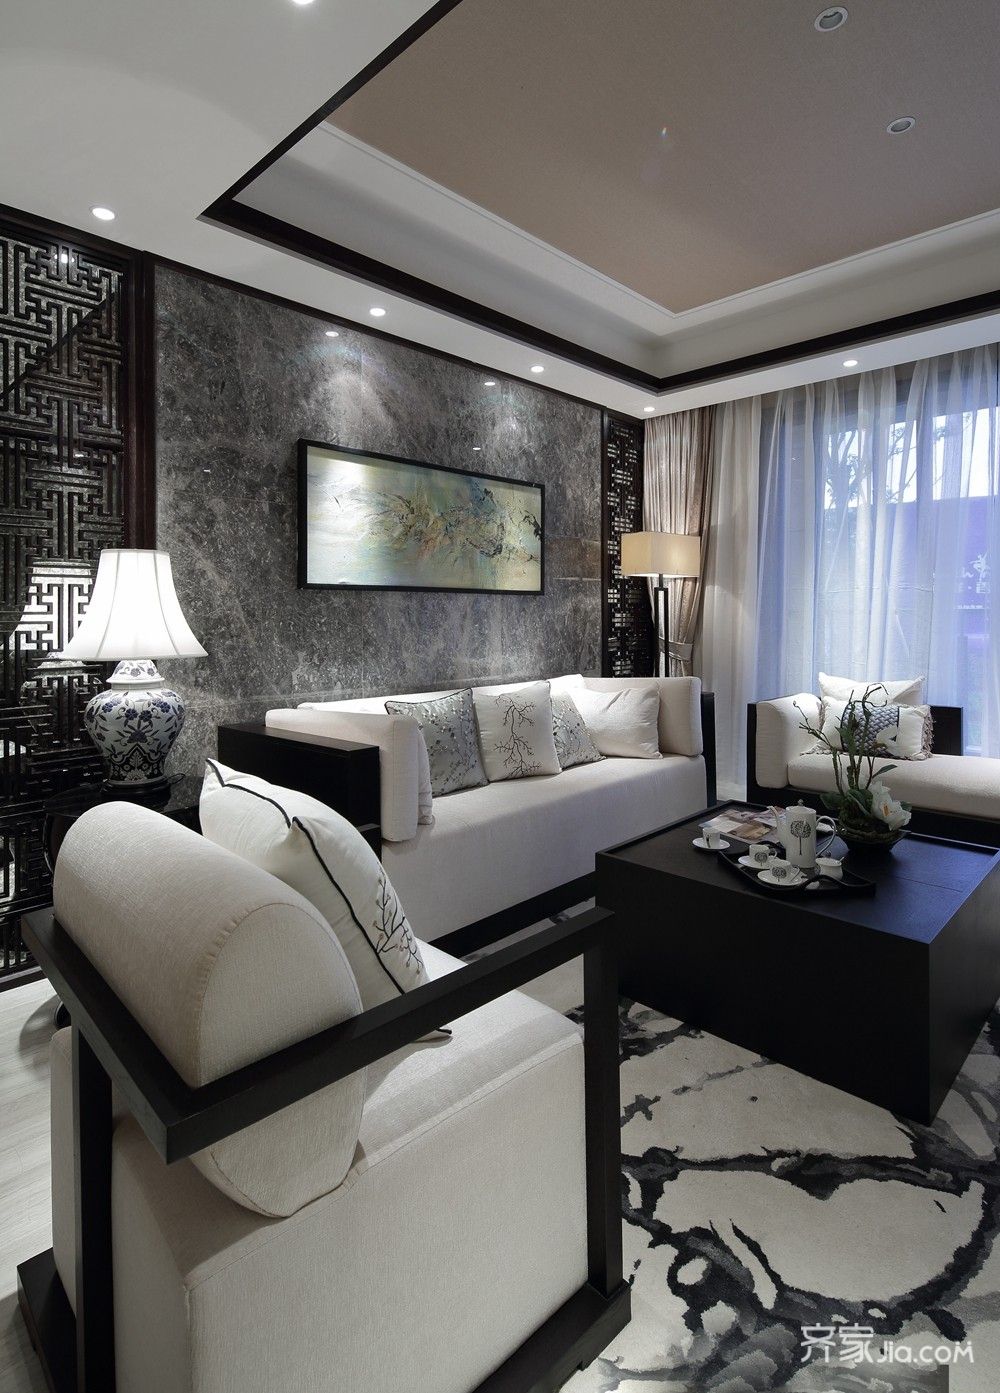 110平米装修,三居室装修,15-20万装修,中式风格,客厅,沙发背景墙,沙发,黑白,灰色